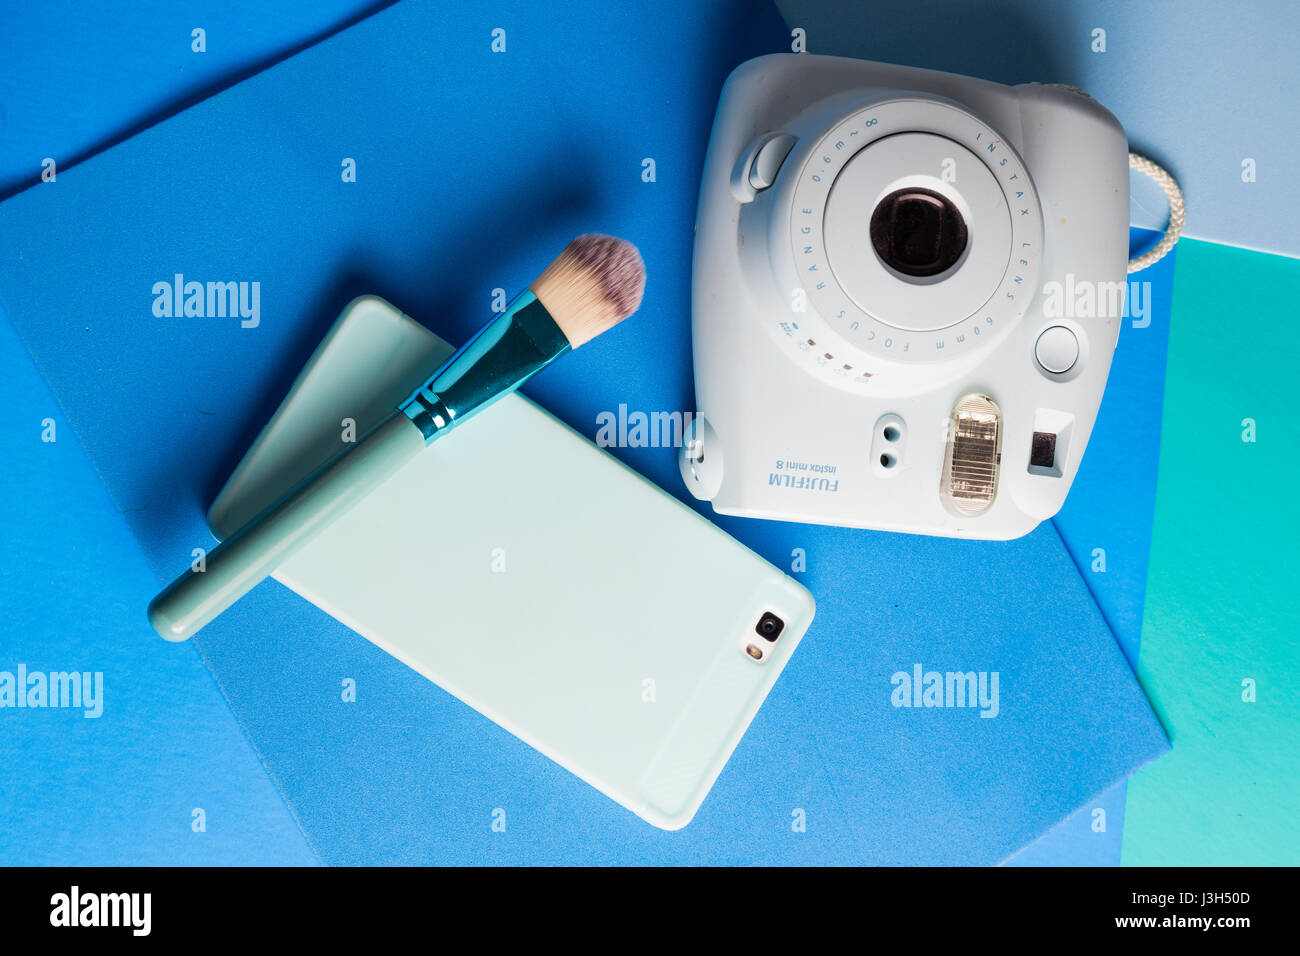 Ihr Leben auf Blautöne: Stillleben mit einer Sofortbild-Kamera, Smartphone und einem Make-up-Pinsel in eine mehrfarbig Blautöne platziert Stockfoto